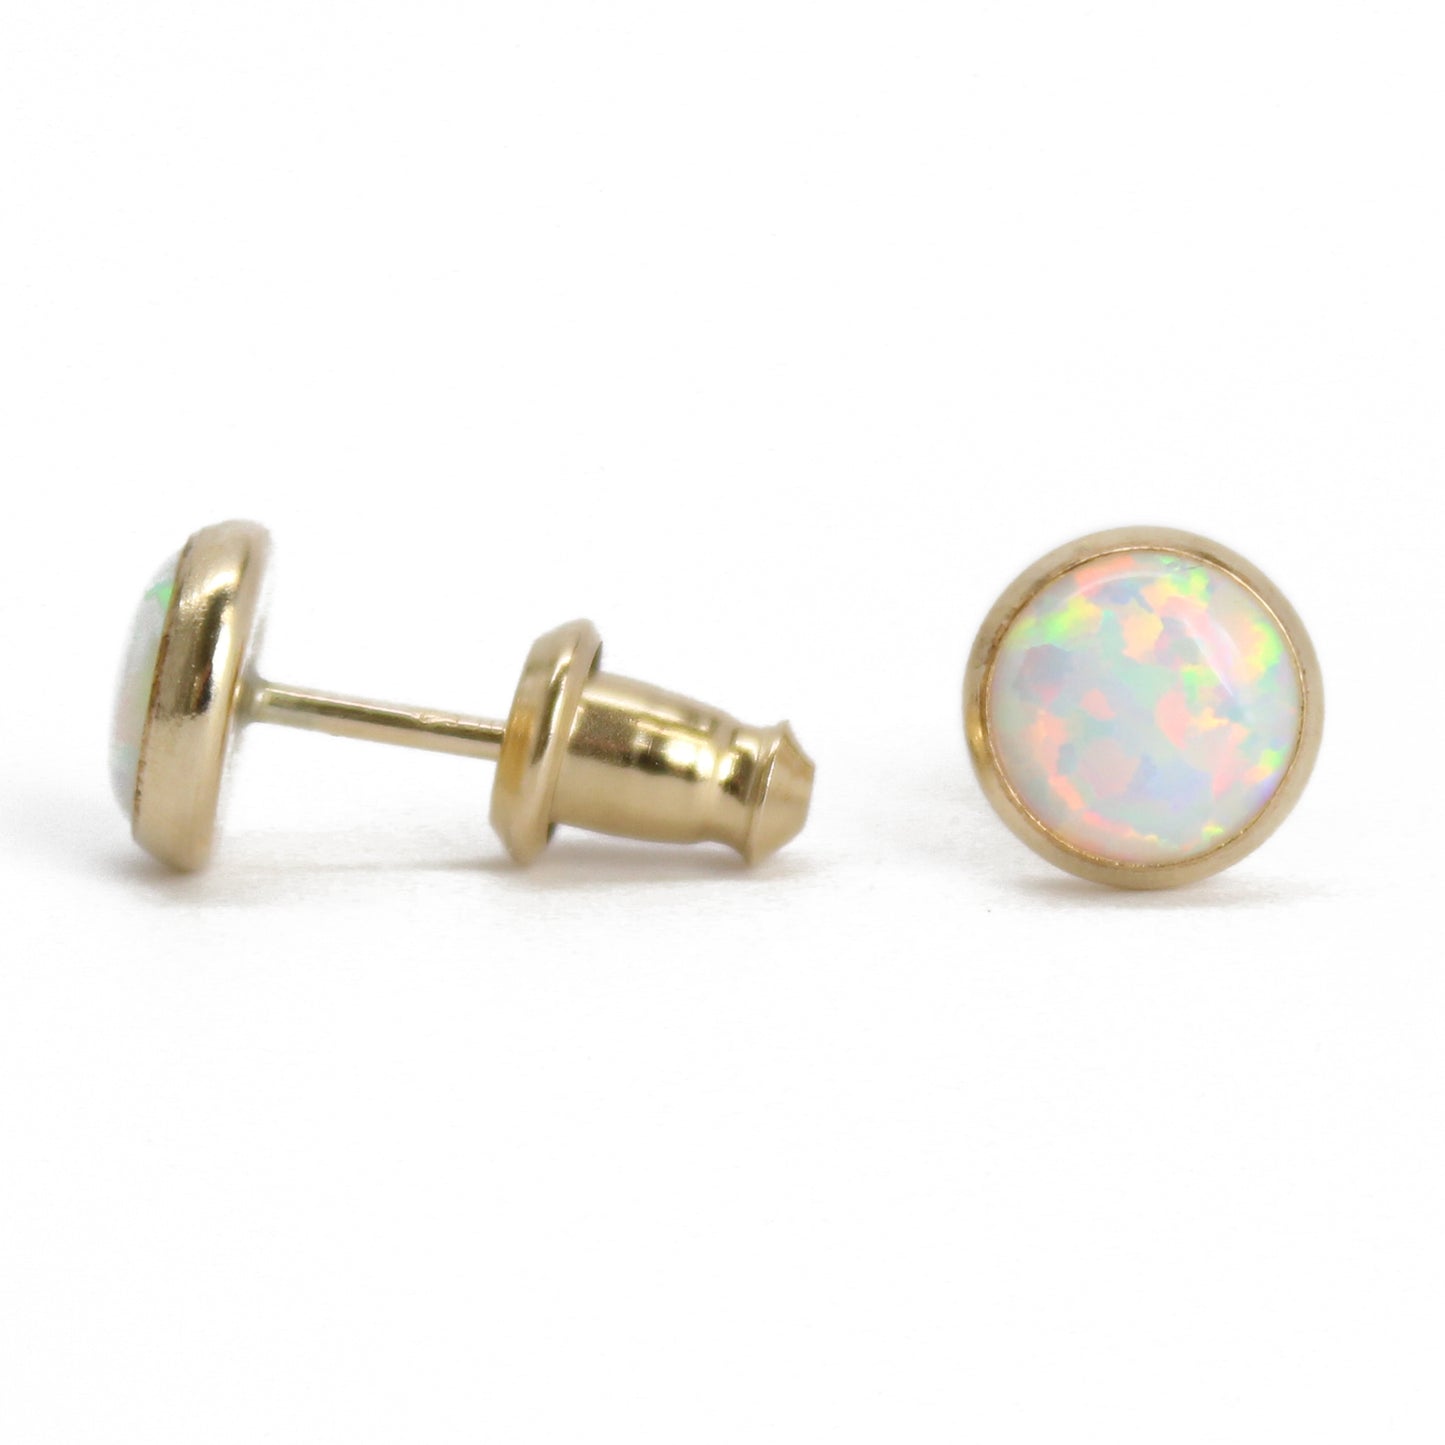 Opal Stud Earrings in 14k Gold Fill